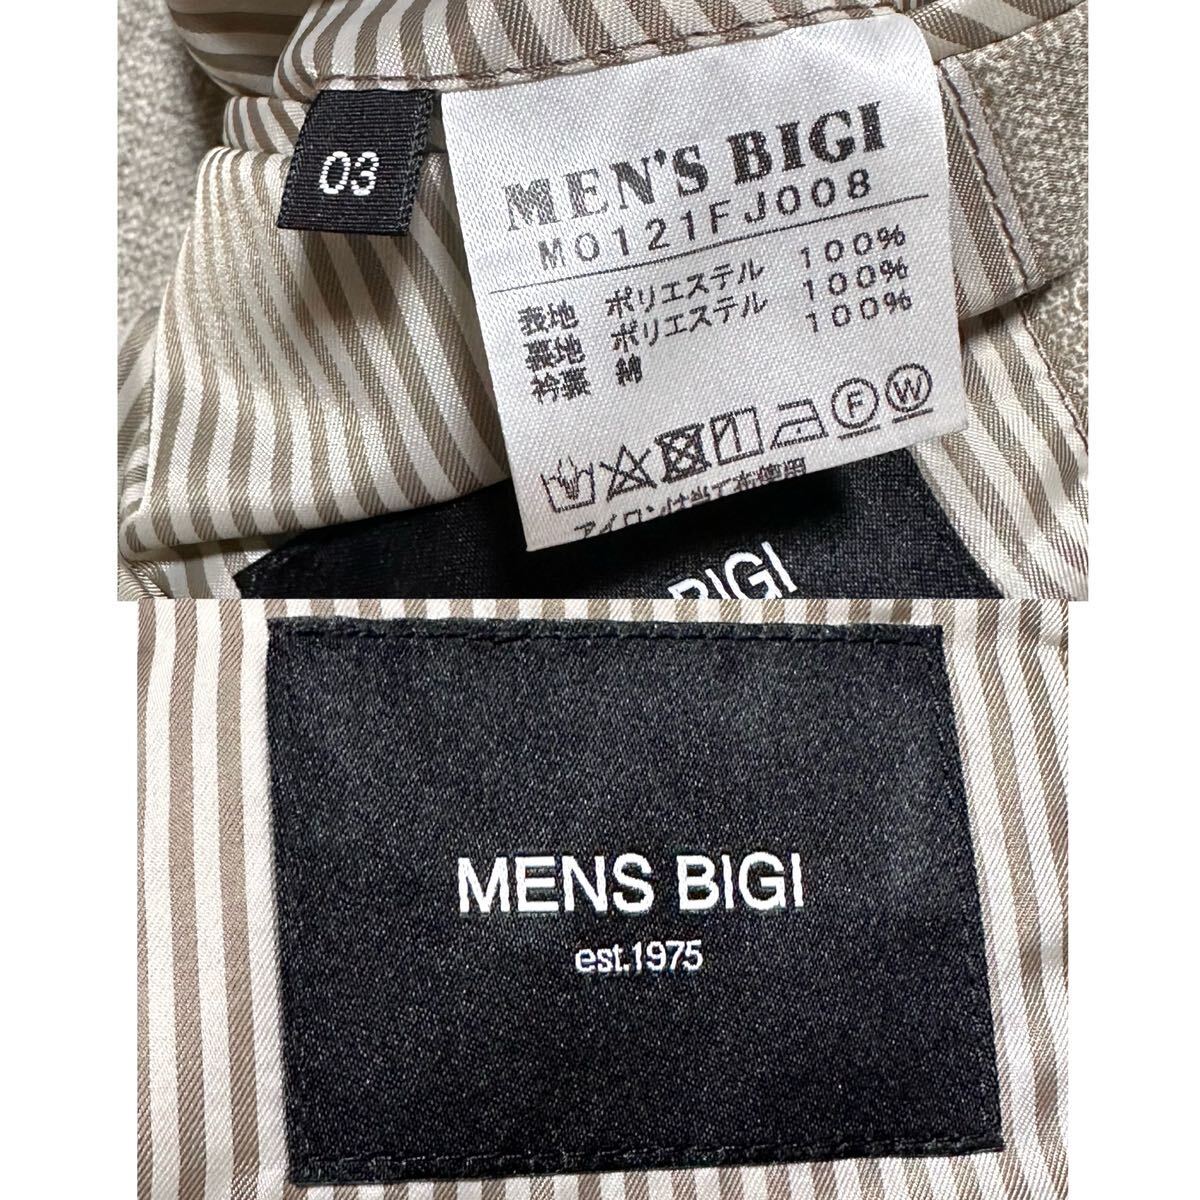 MEN'S BIGI 【 Lサイズ!! 紳士の嗜み 】 メンズビギ テーラードジャケット アンコン ペイズリー ストライプ ストレッチ◎ ベージュ メンズ_画像10